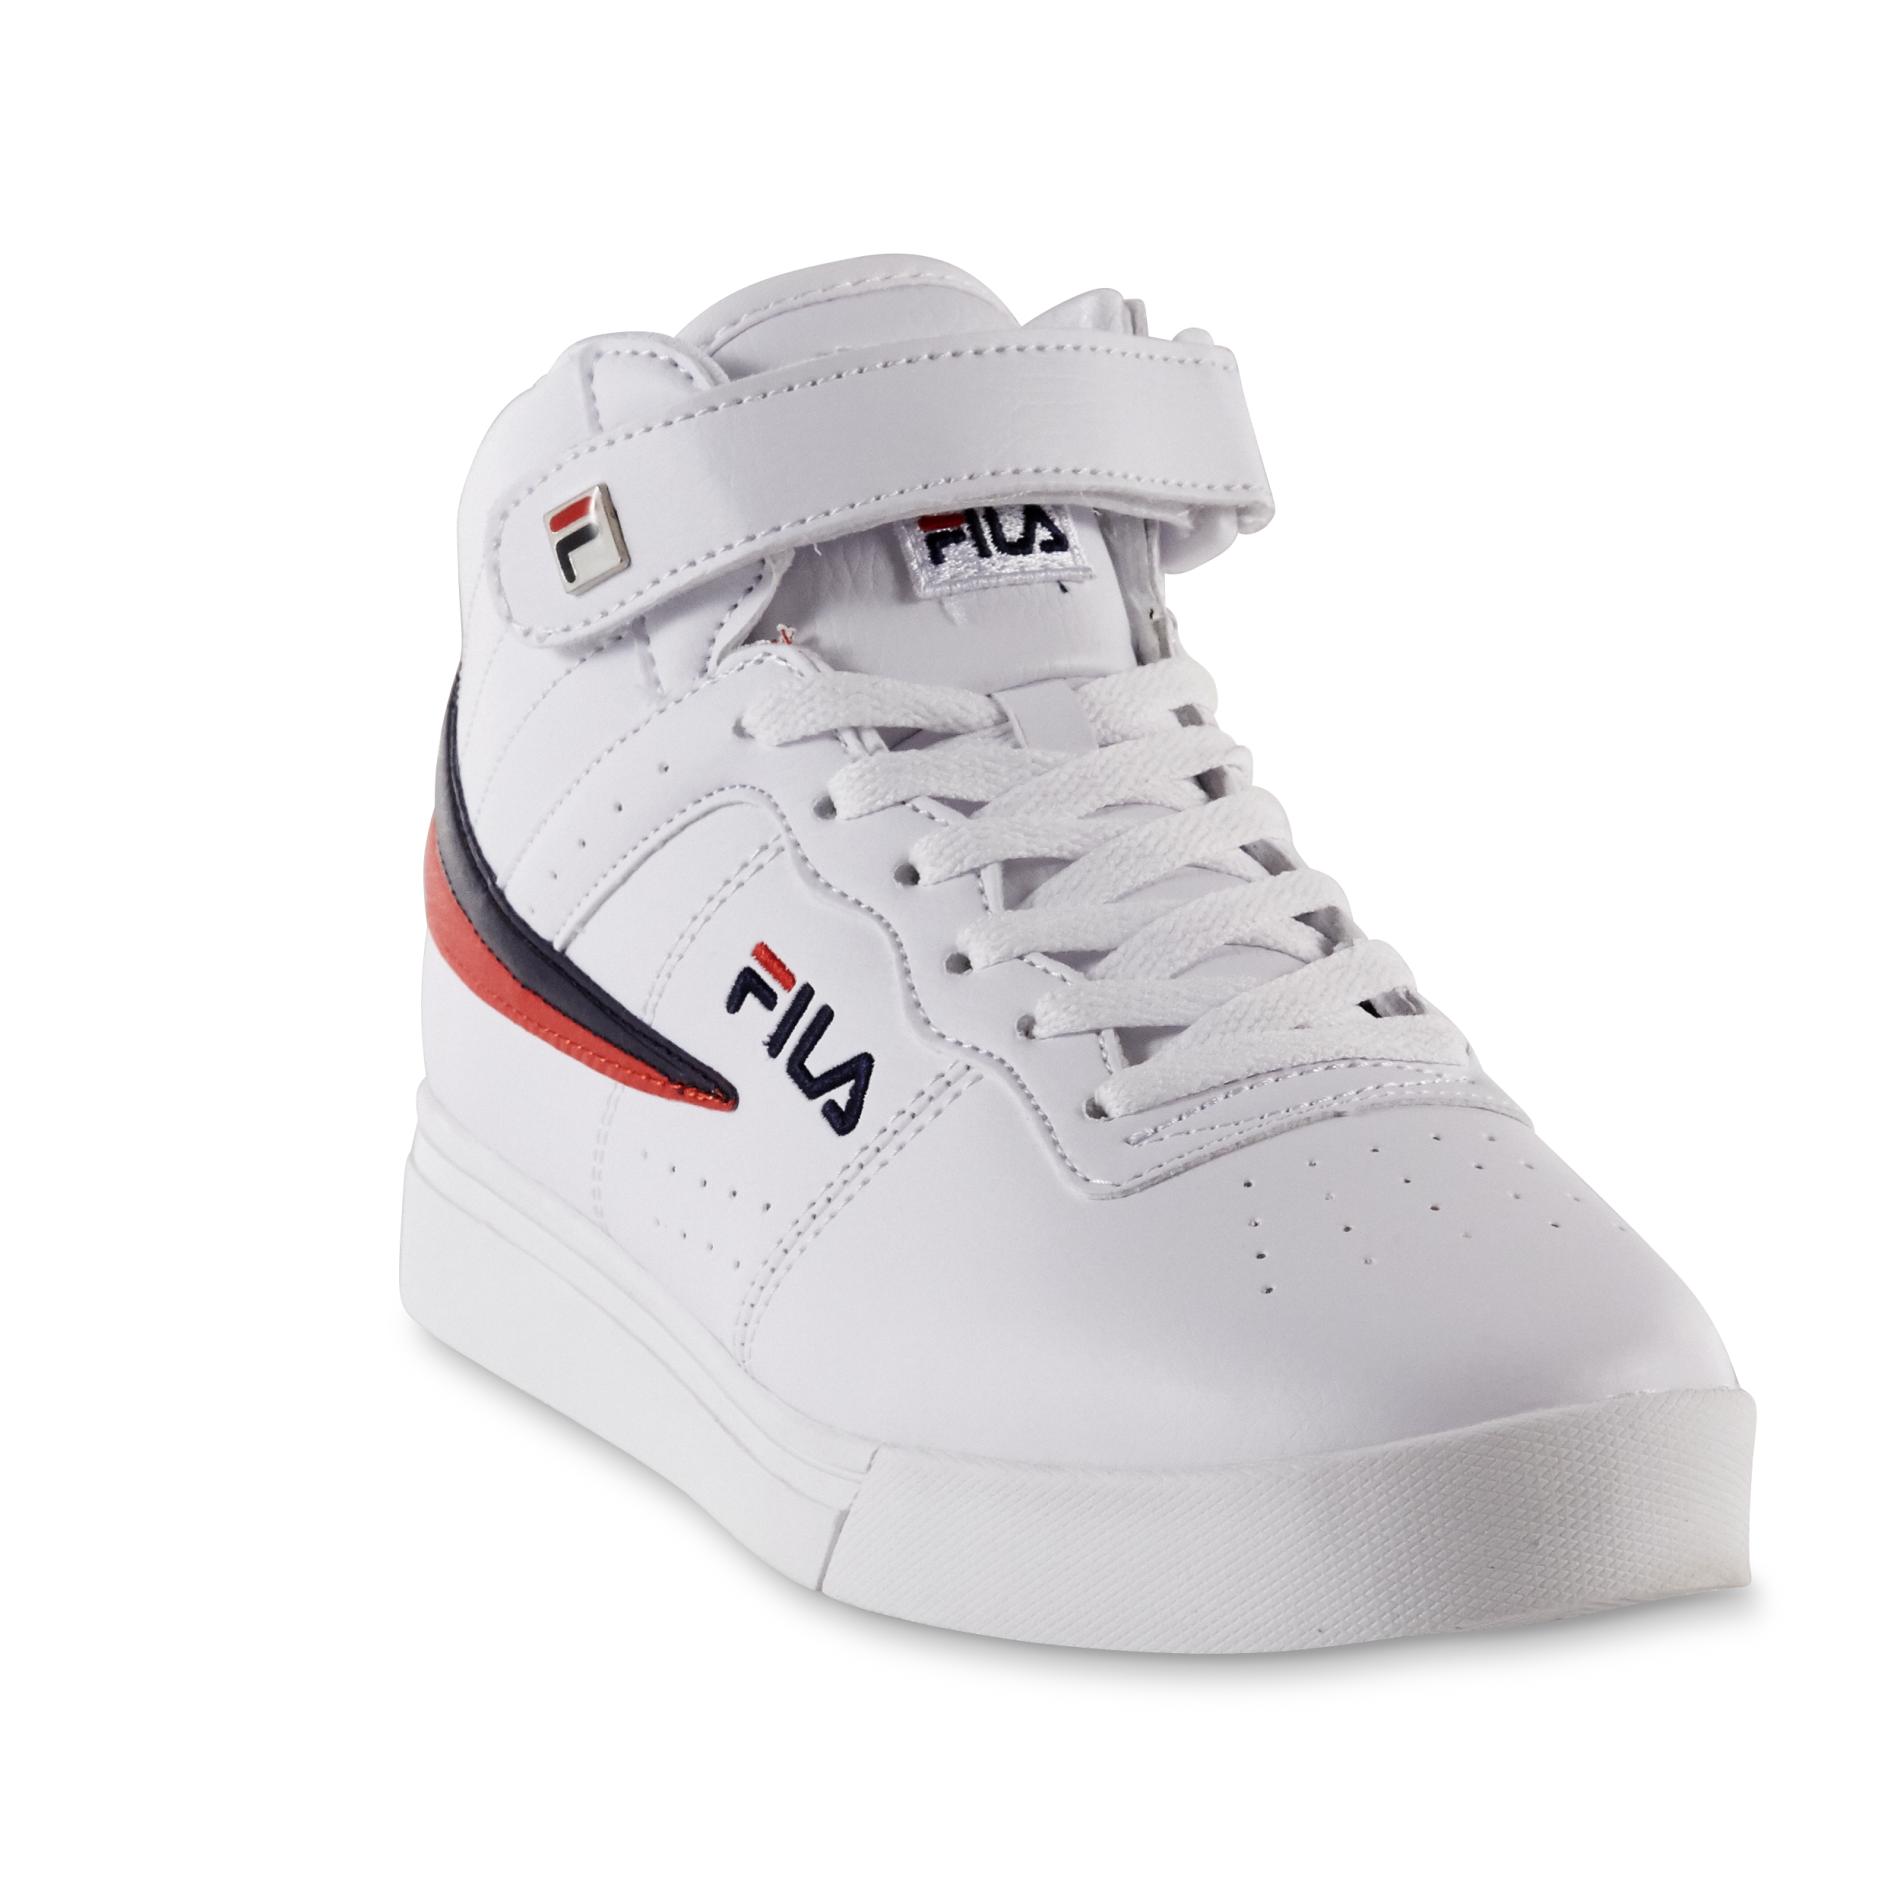 Fila Men's Vulc 13 White/Blue/Red Mid-Top Sneaker